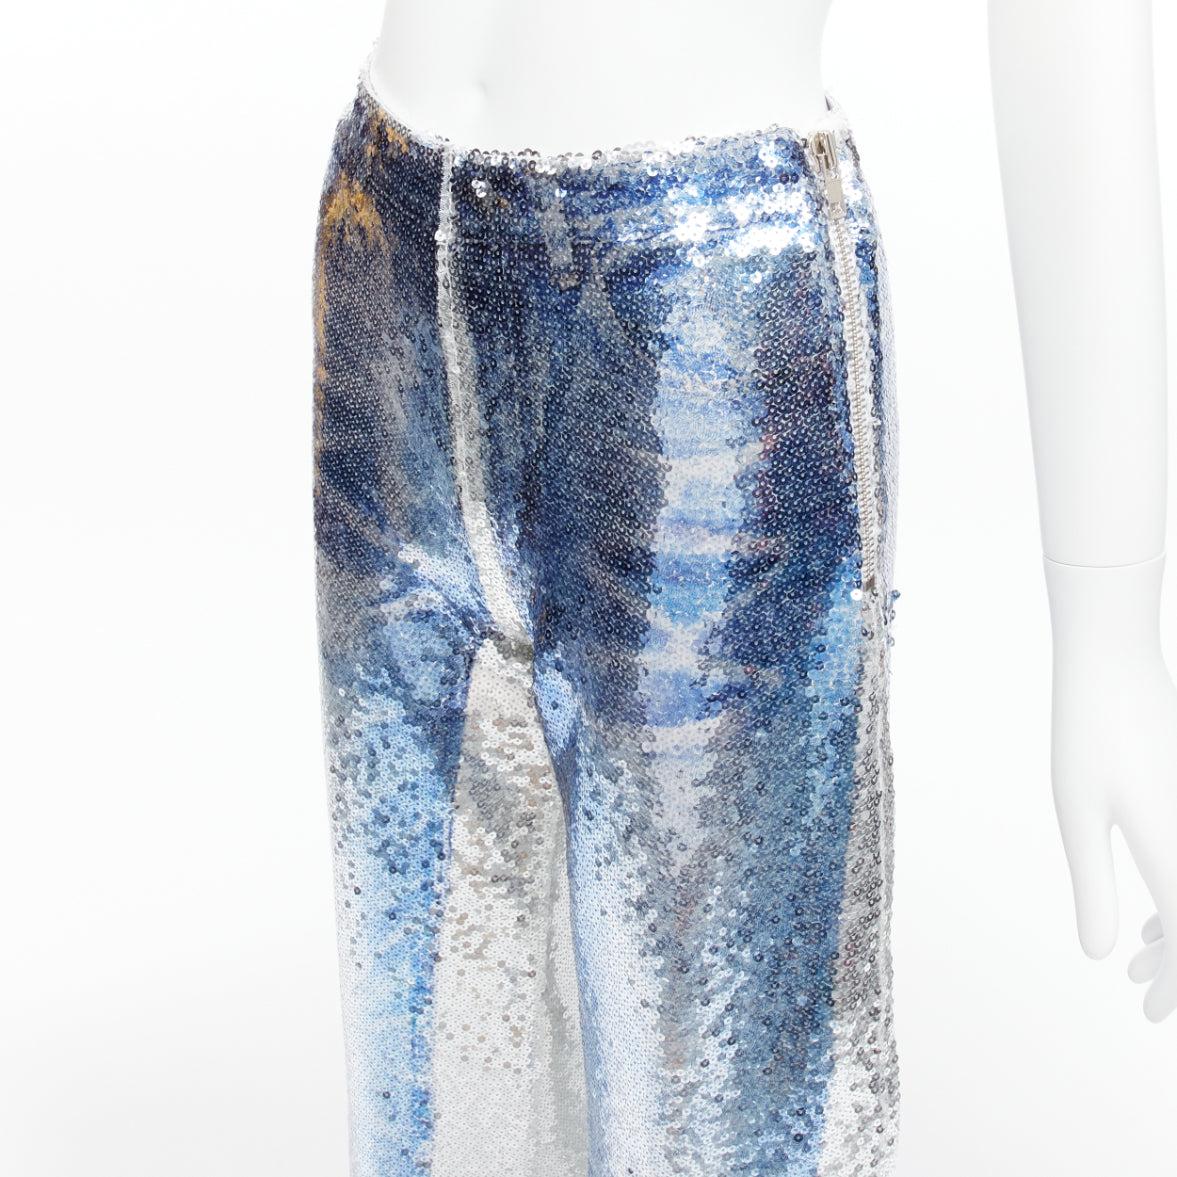 PONY STONE THAILAND silver tromp loeil jeans print sequins wide leg pants US2 S For Sale 2